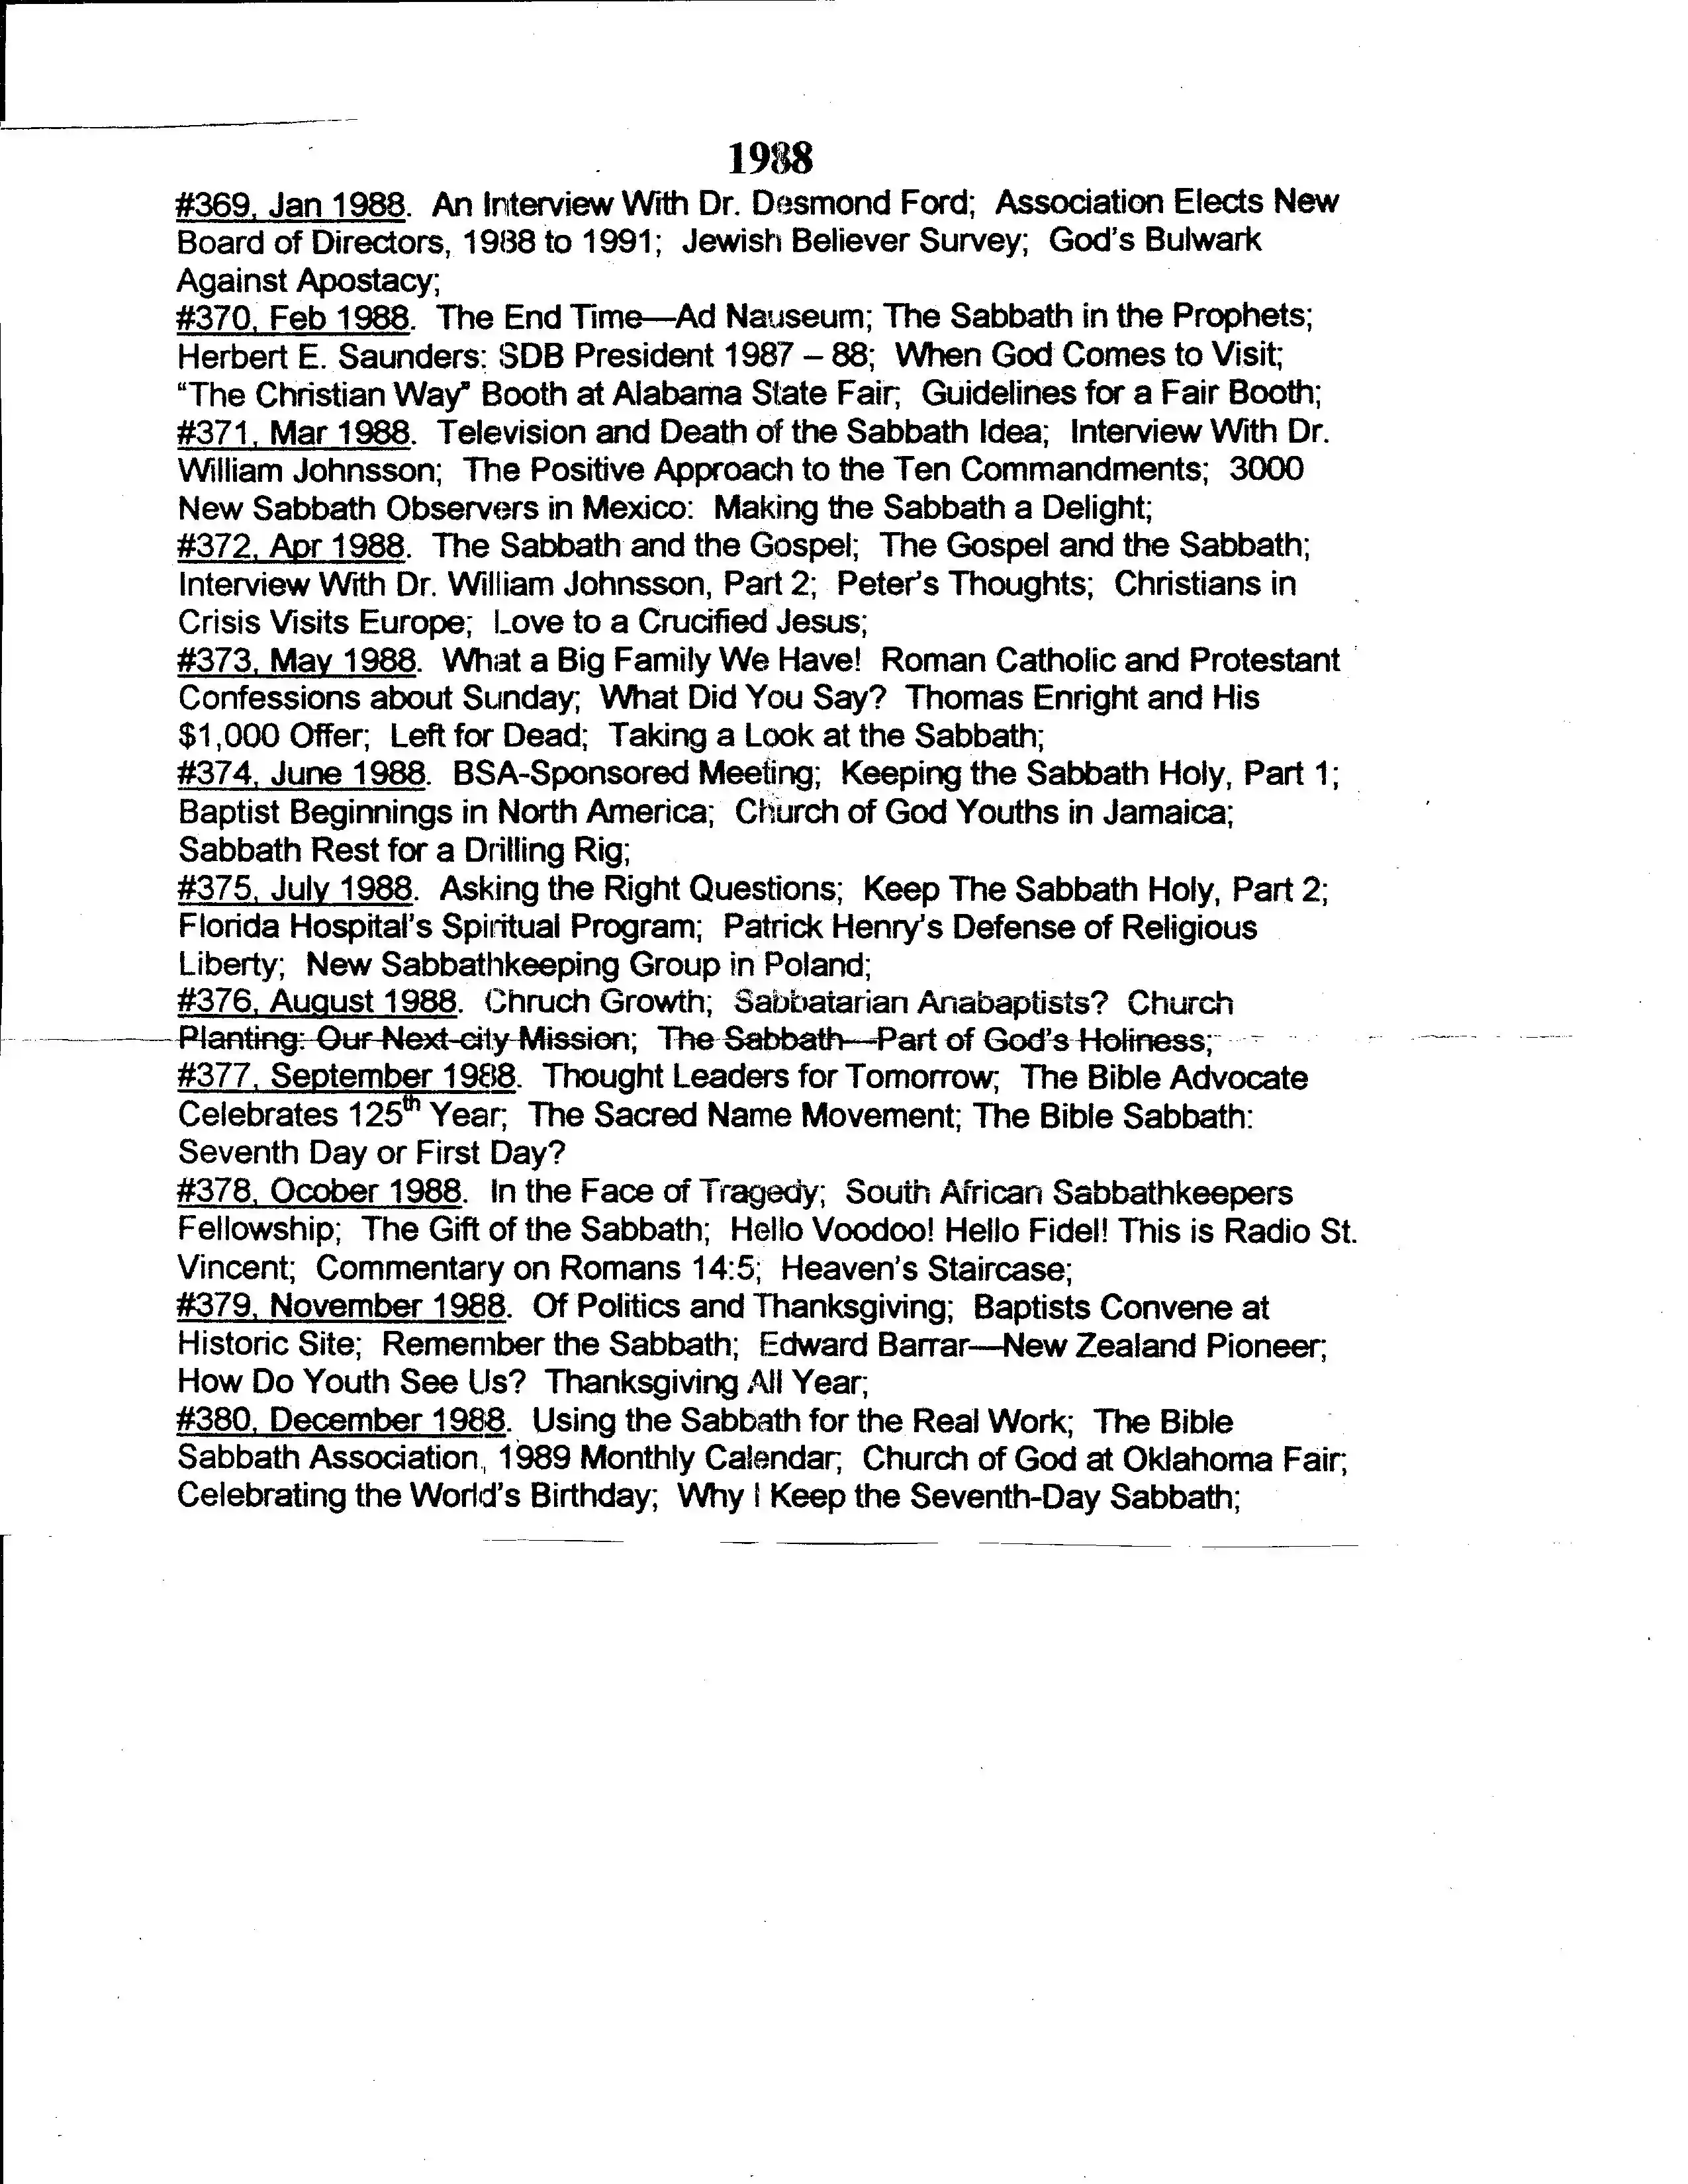 BSA TSS  issue summary 1988